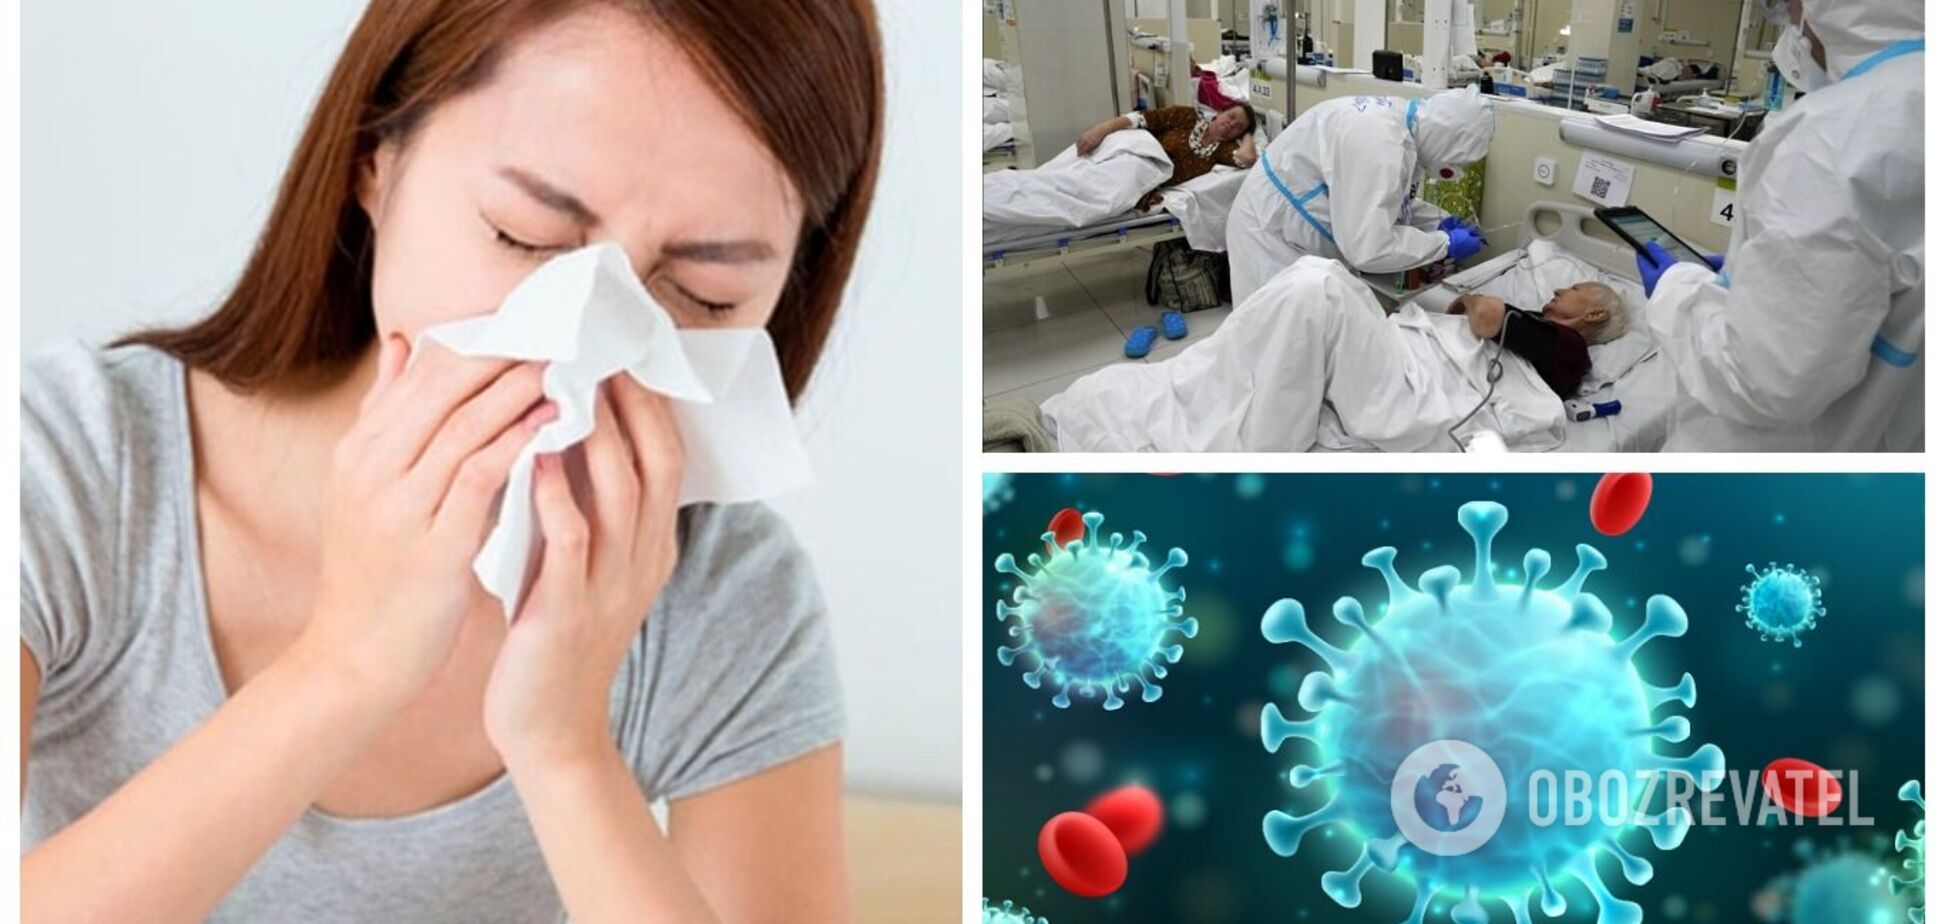 Якщо прийде грип і об'єднається з COVID-19, то шанси смерті збільшаться вдвічі, - лікар про ризики для українців